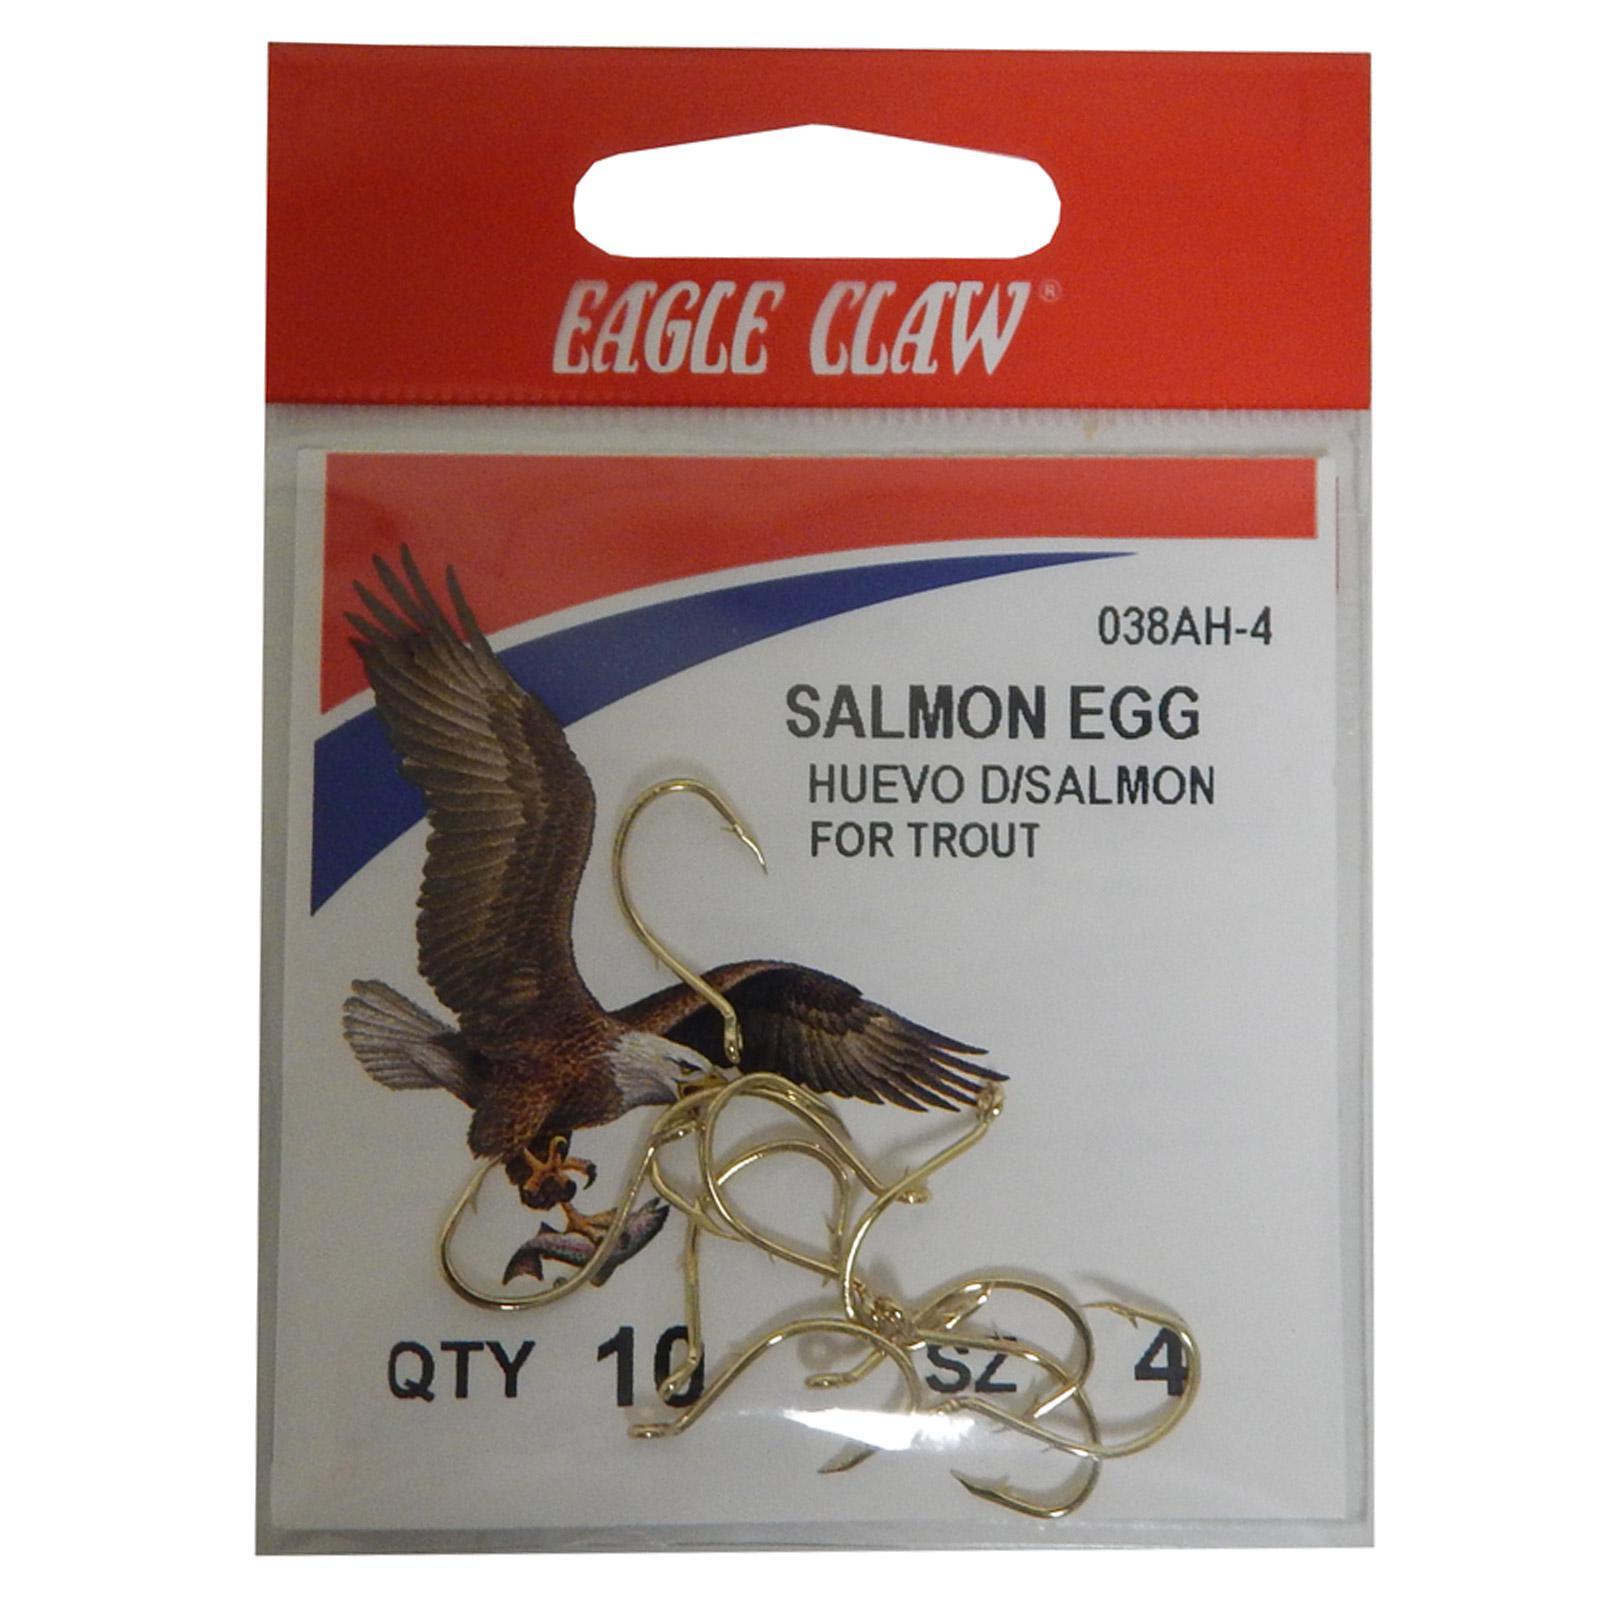 Eagle Claw Salmon Egg Baitholder Fish Hooks, Size 4 - Holiday Gift